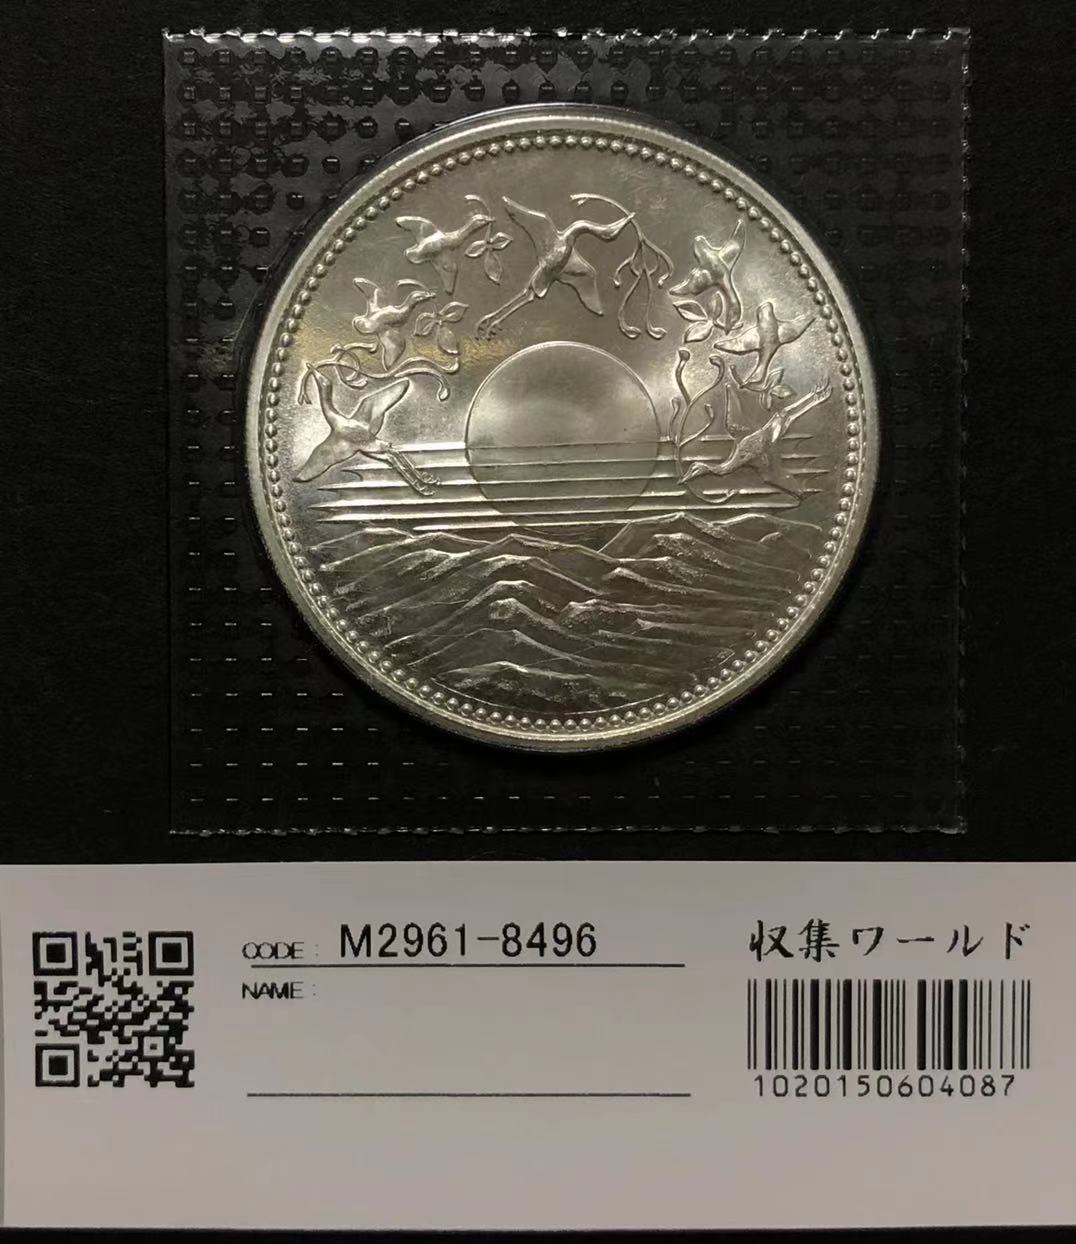 (S61) 昭和天皇御在位60年記念 1万円銀貨 完未品 ブリスターパック入